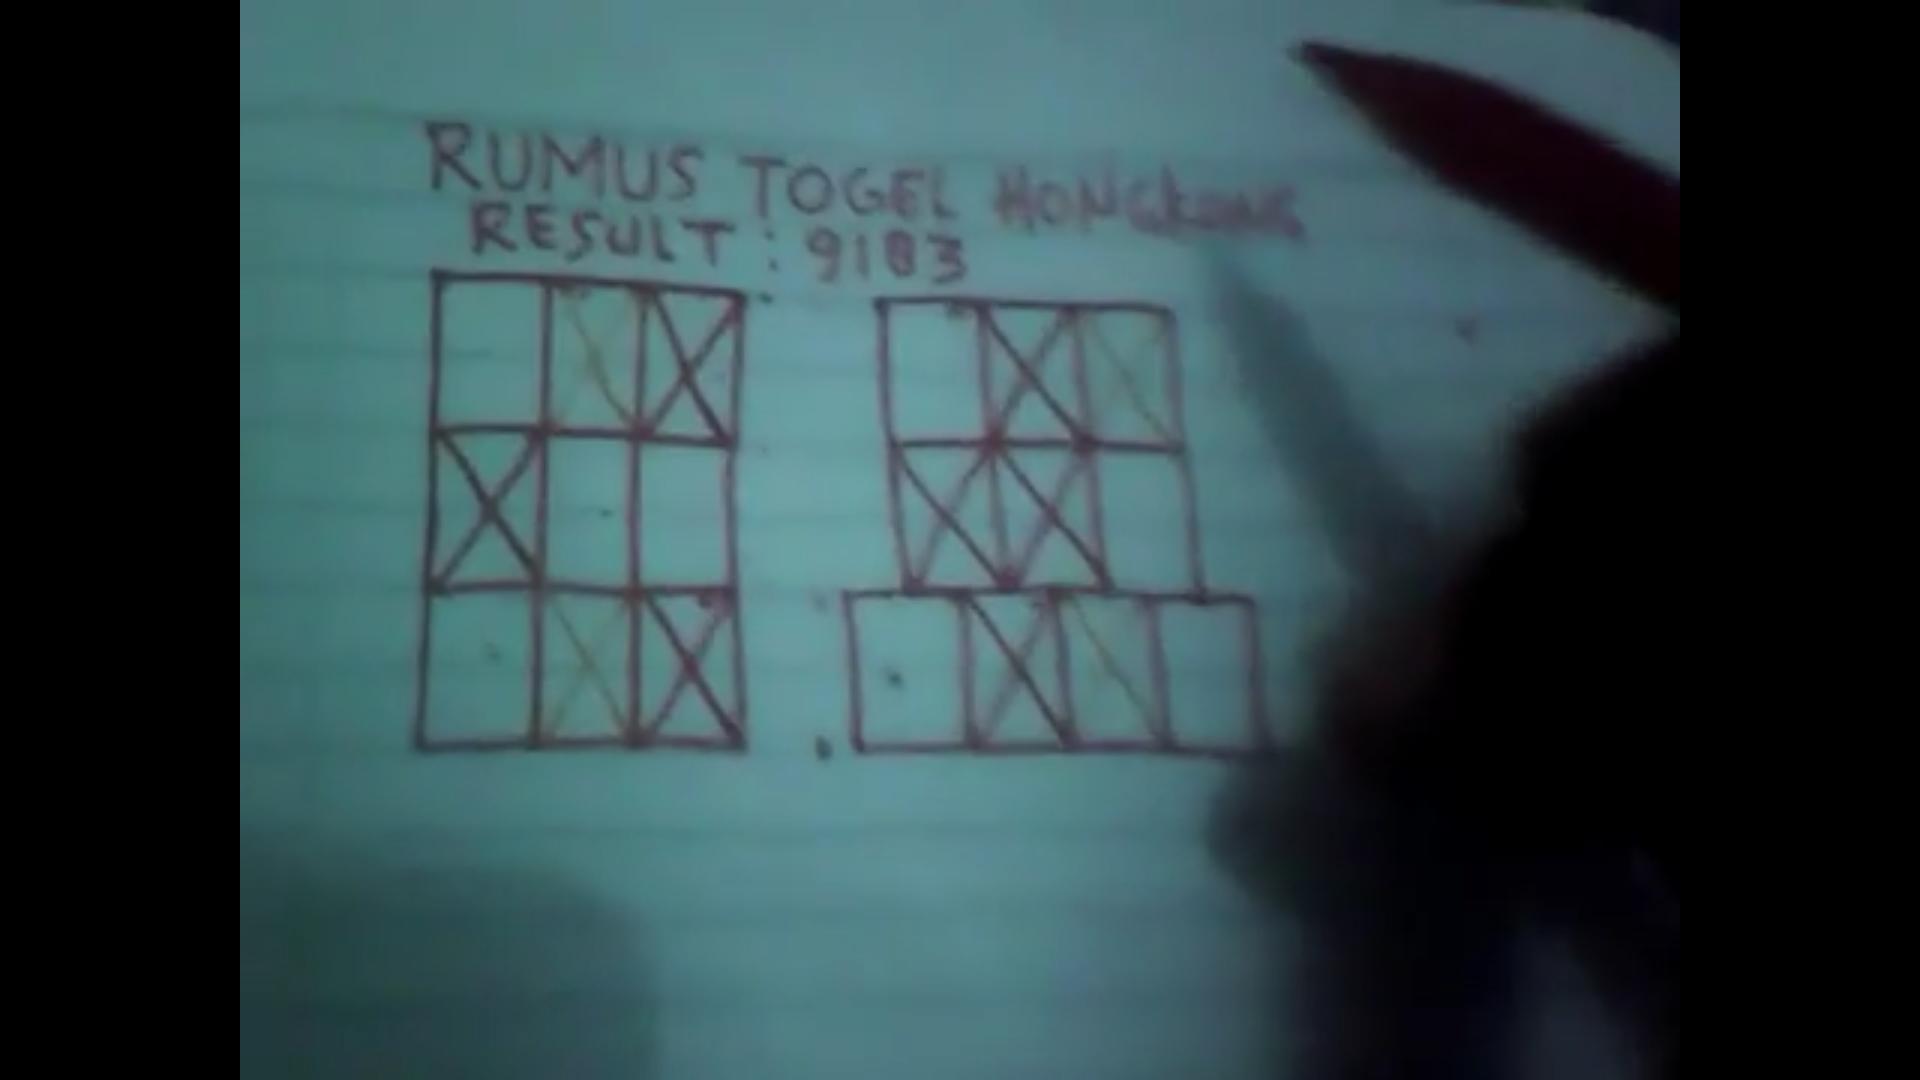 Download Rumus Togell Jitu Pics